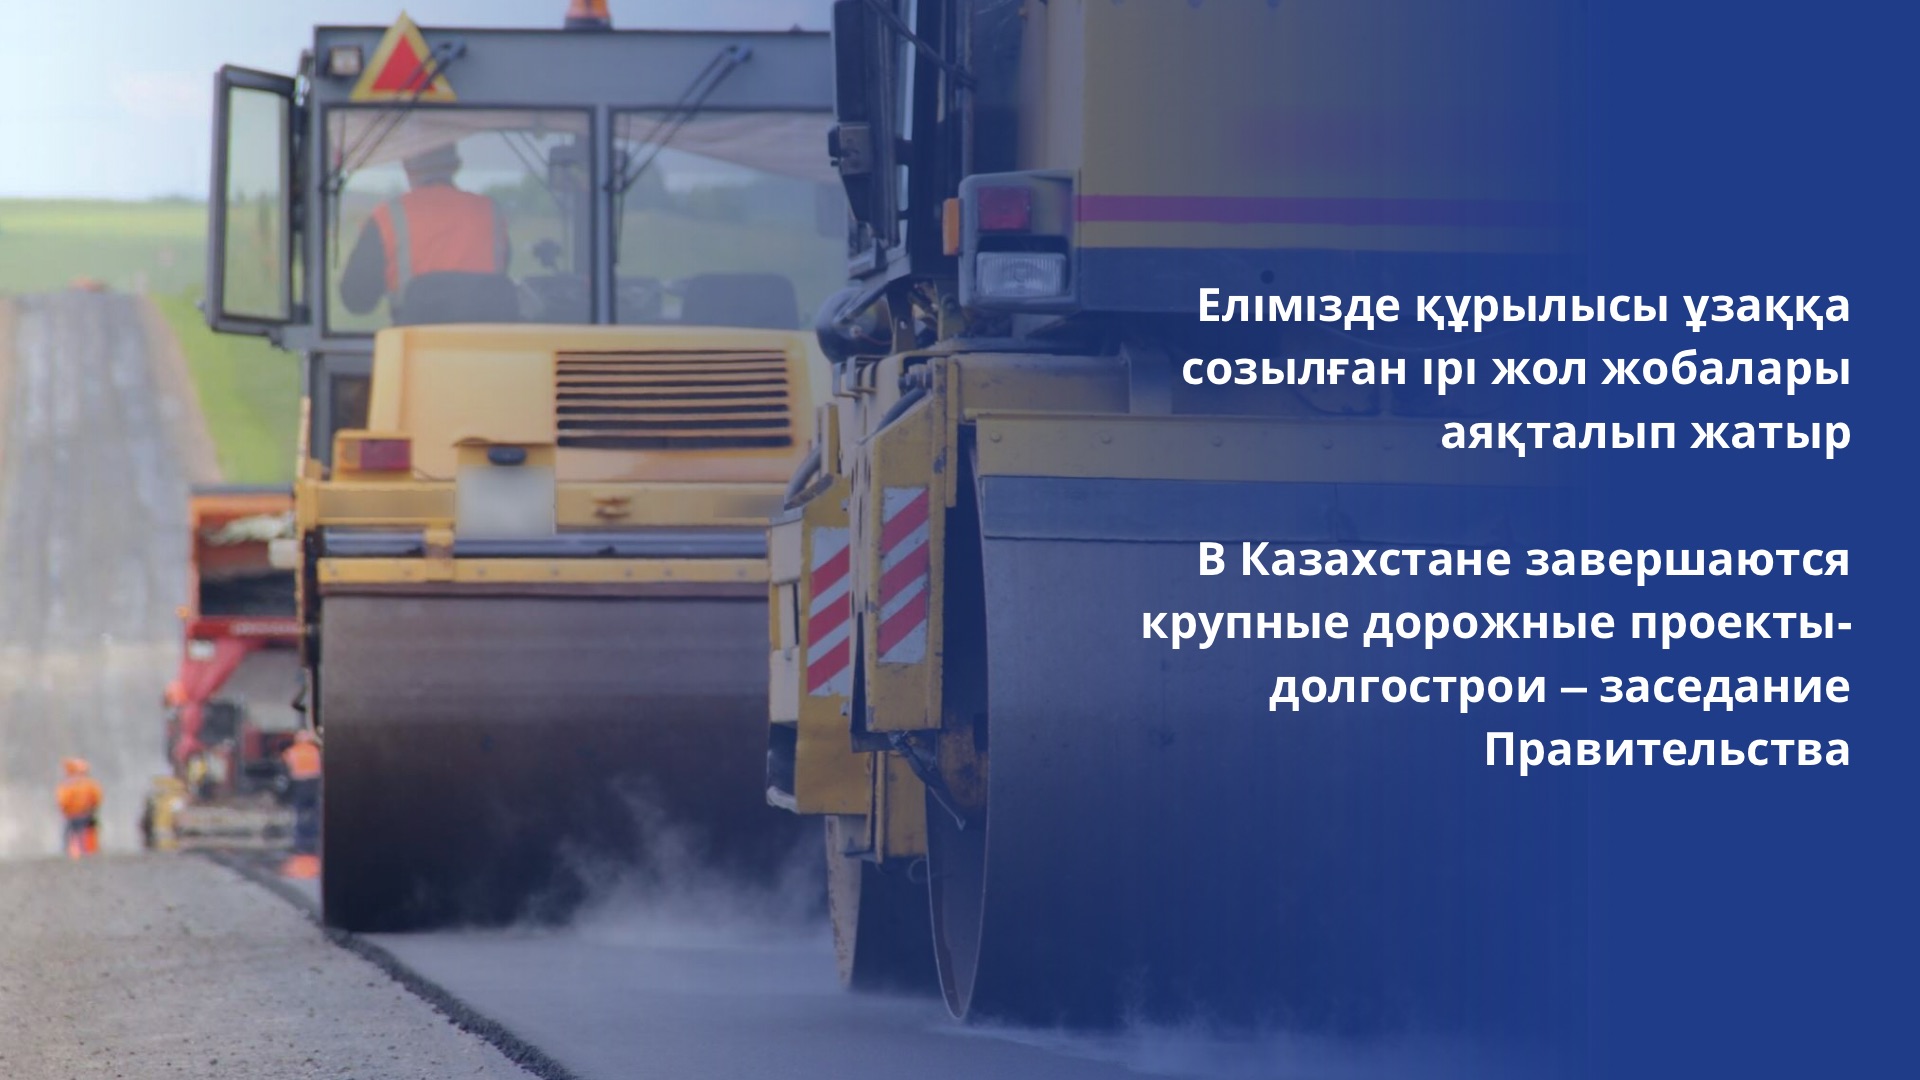 В Казахстане завершаются крупные дорожные проекты-долгострои – заседание Правительства